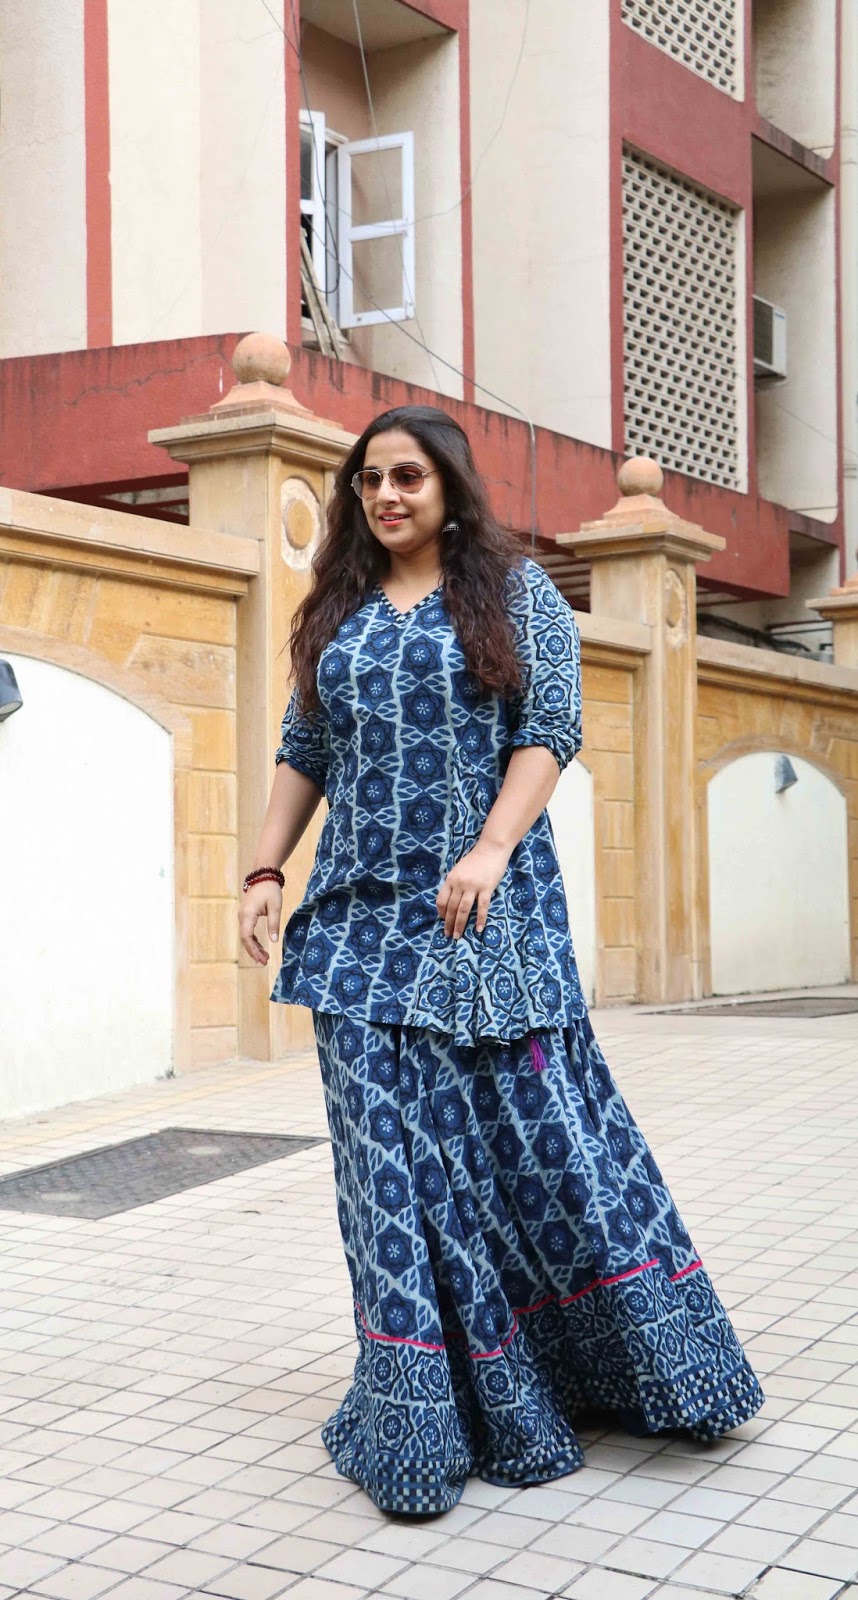 Beautiful Hindi Actress Vidya Balan Long Hair Photos In Blue Dress